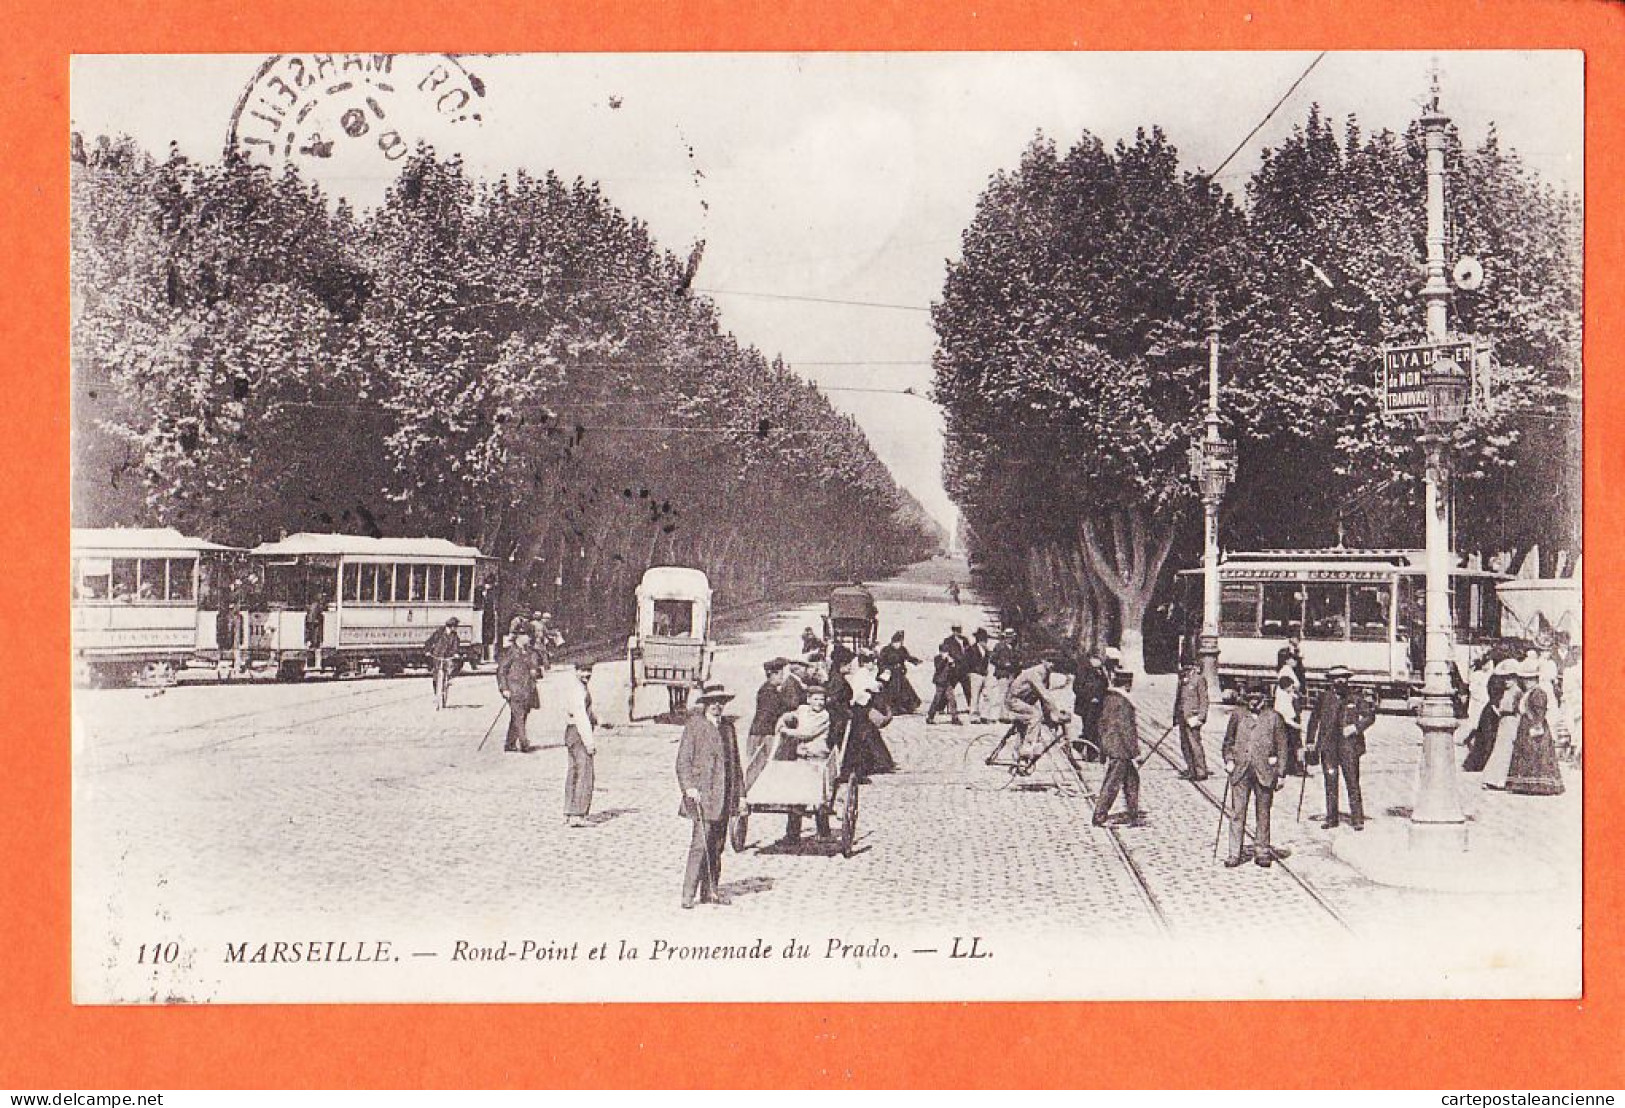 10750 ● MARSEILLE (13) Rond-Point Et La Promenade Du PRADO 1913 à BOUTET Port-Vendres LEVY 110 - Castellane, Prado, Menpenti, Rouet